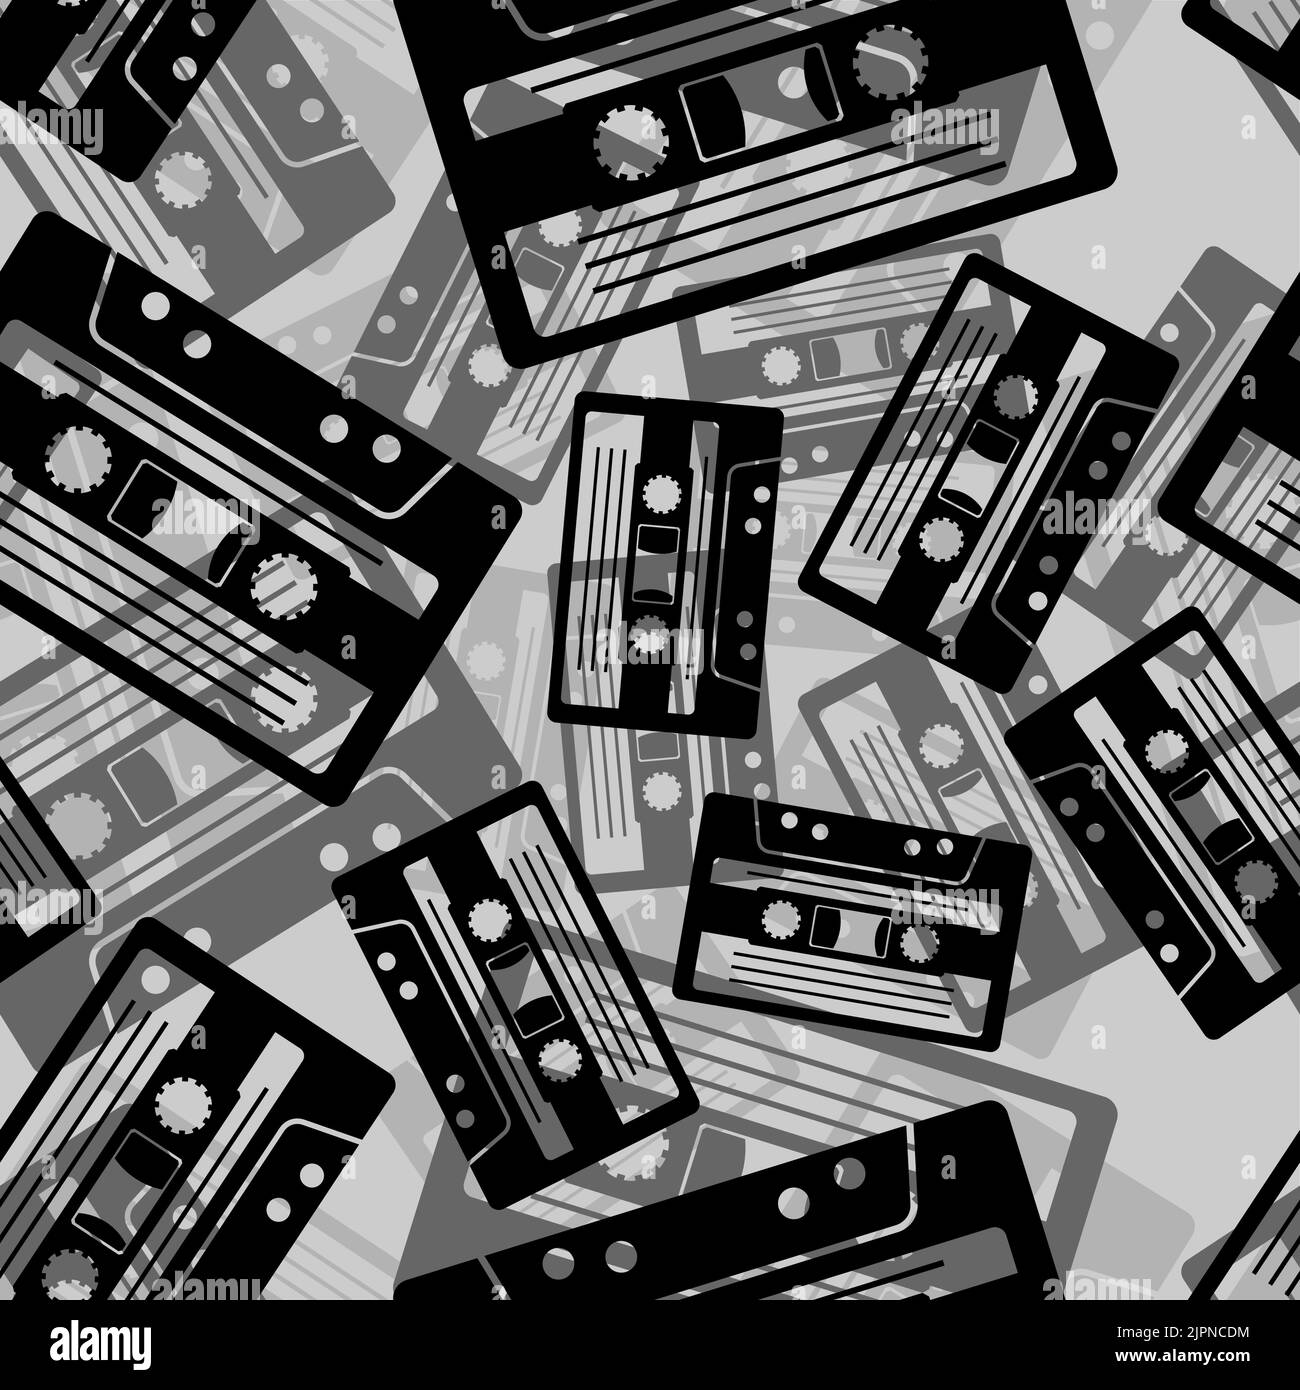 Cassetta Audio Isolante Nastro Vettoriale Precedente Lettore Cassetta Audio  Retraliccio Audio 80 S Bianco Mix Illustrazione Vettoriale - Illustrazione  di disco, disegno: 156489159